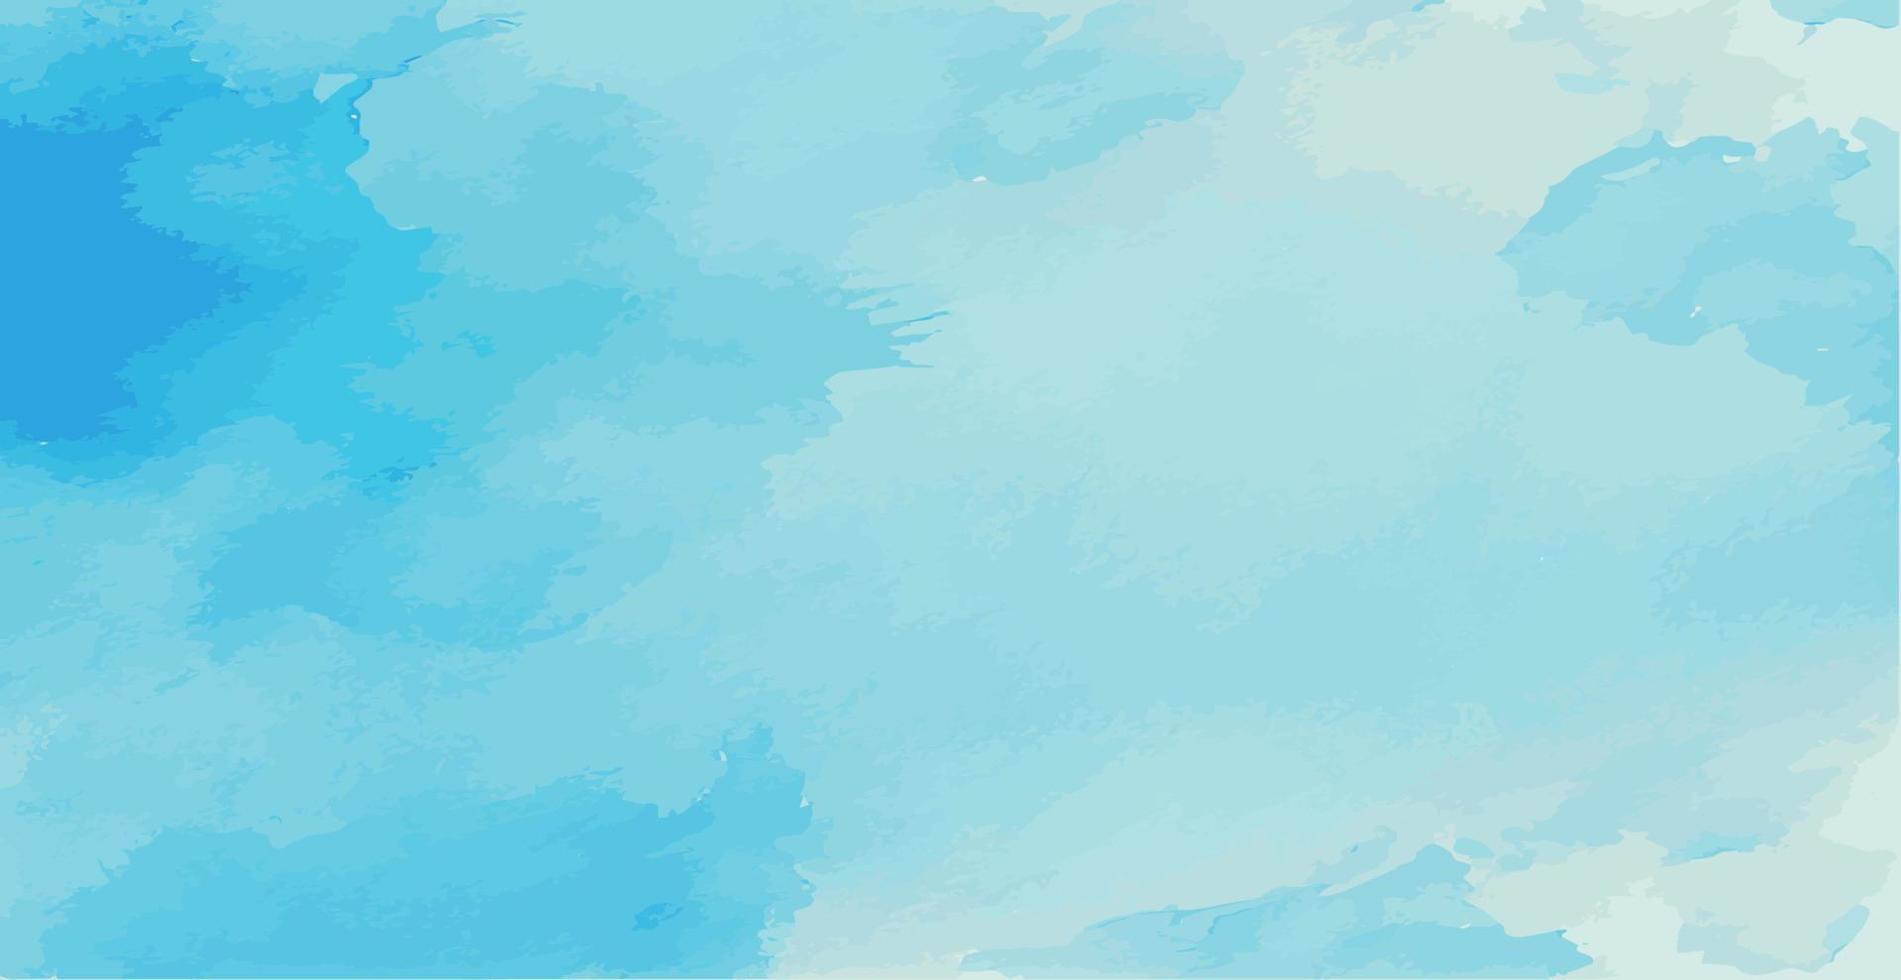 textura panorâmica aquarela azul realista sobre fundo branco - vetor